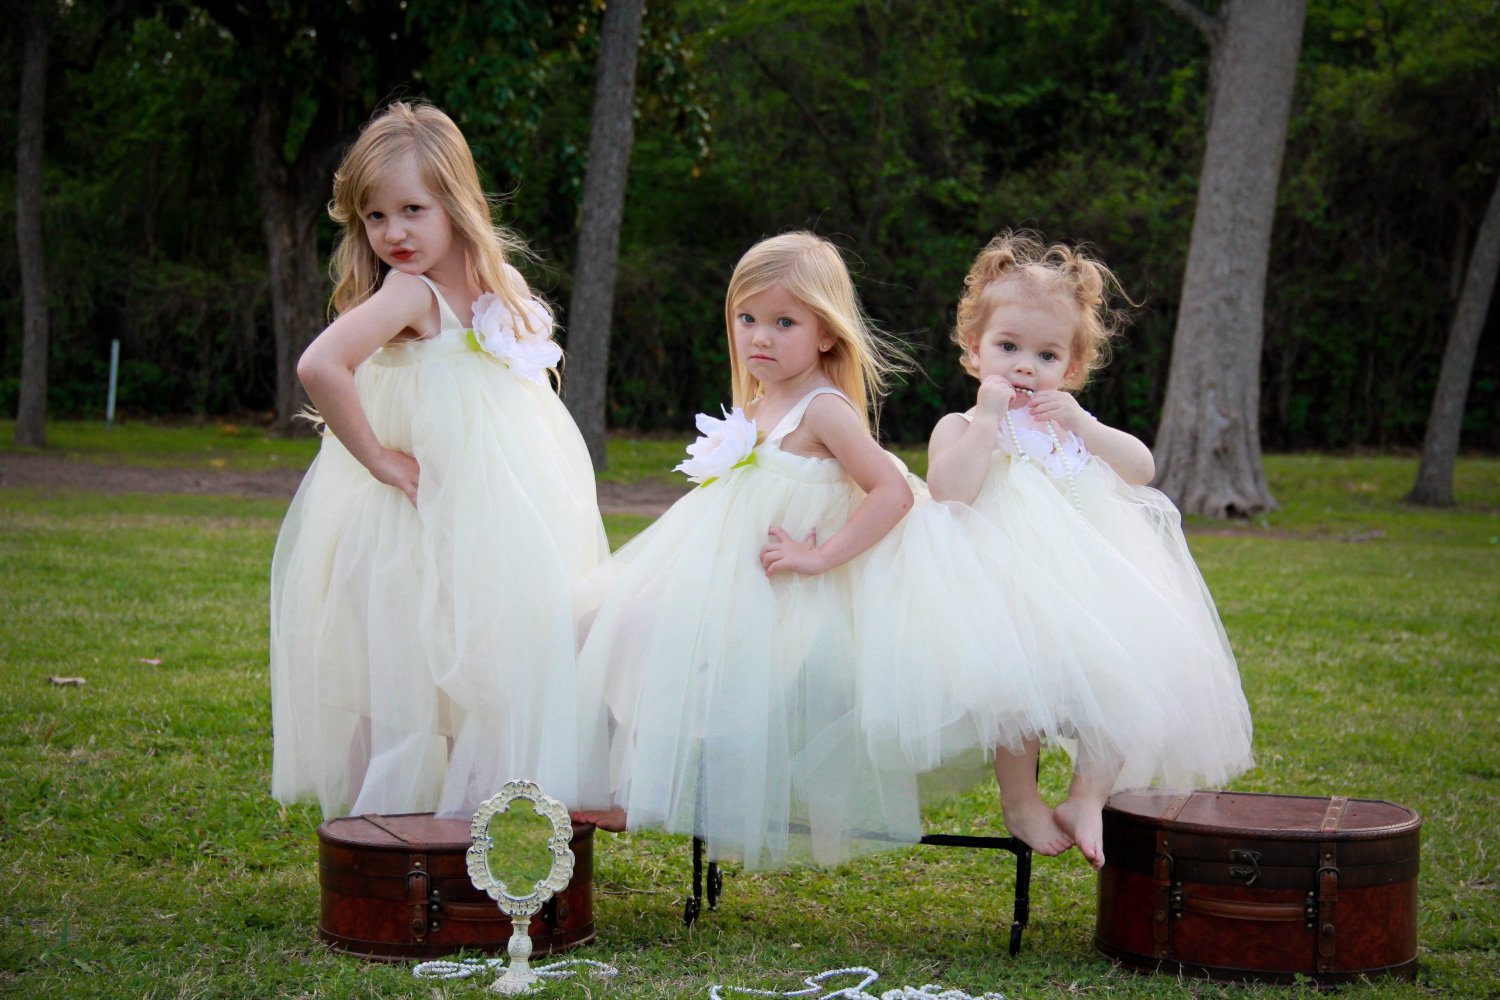 Flower Girl Dress Light Pink Tulle Wedding Dress for Little Girl Birthday, Baby and Toddler Tutu Dress, Princess Flower Girl Tutu Dresses